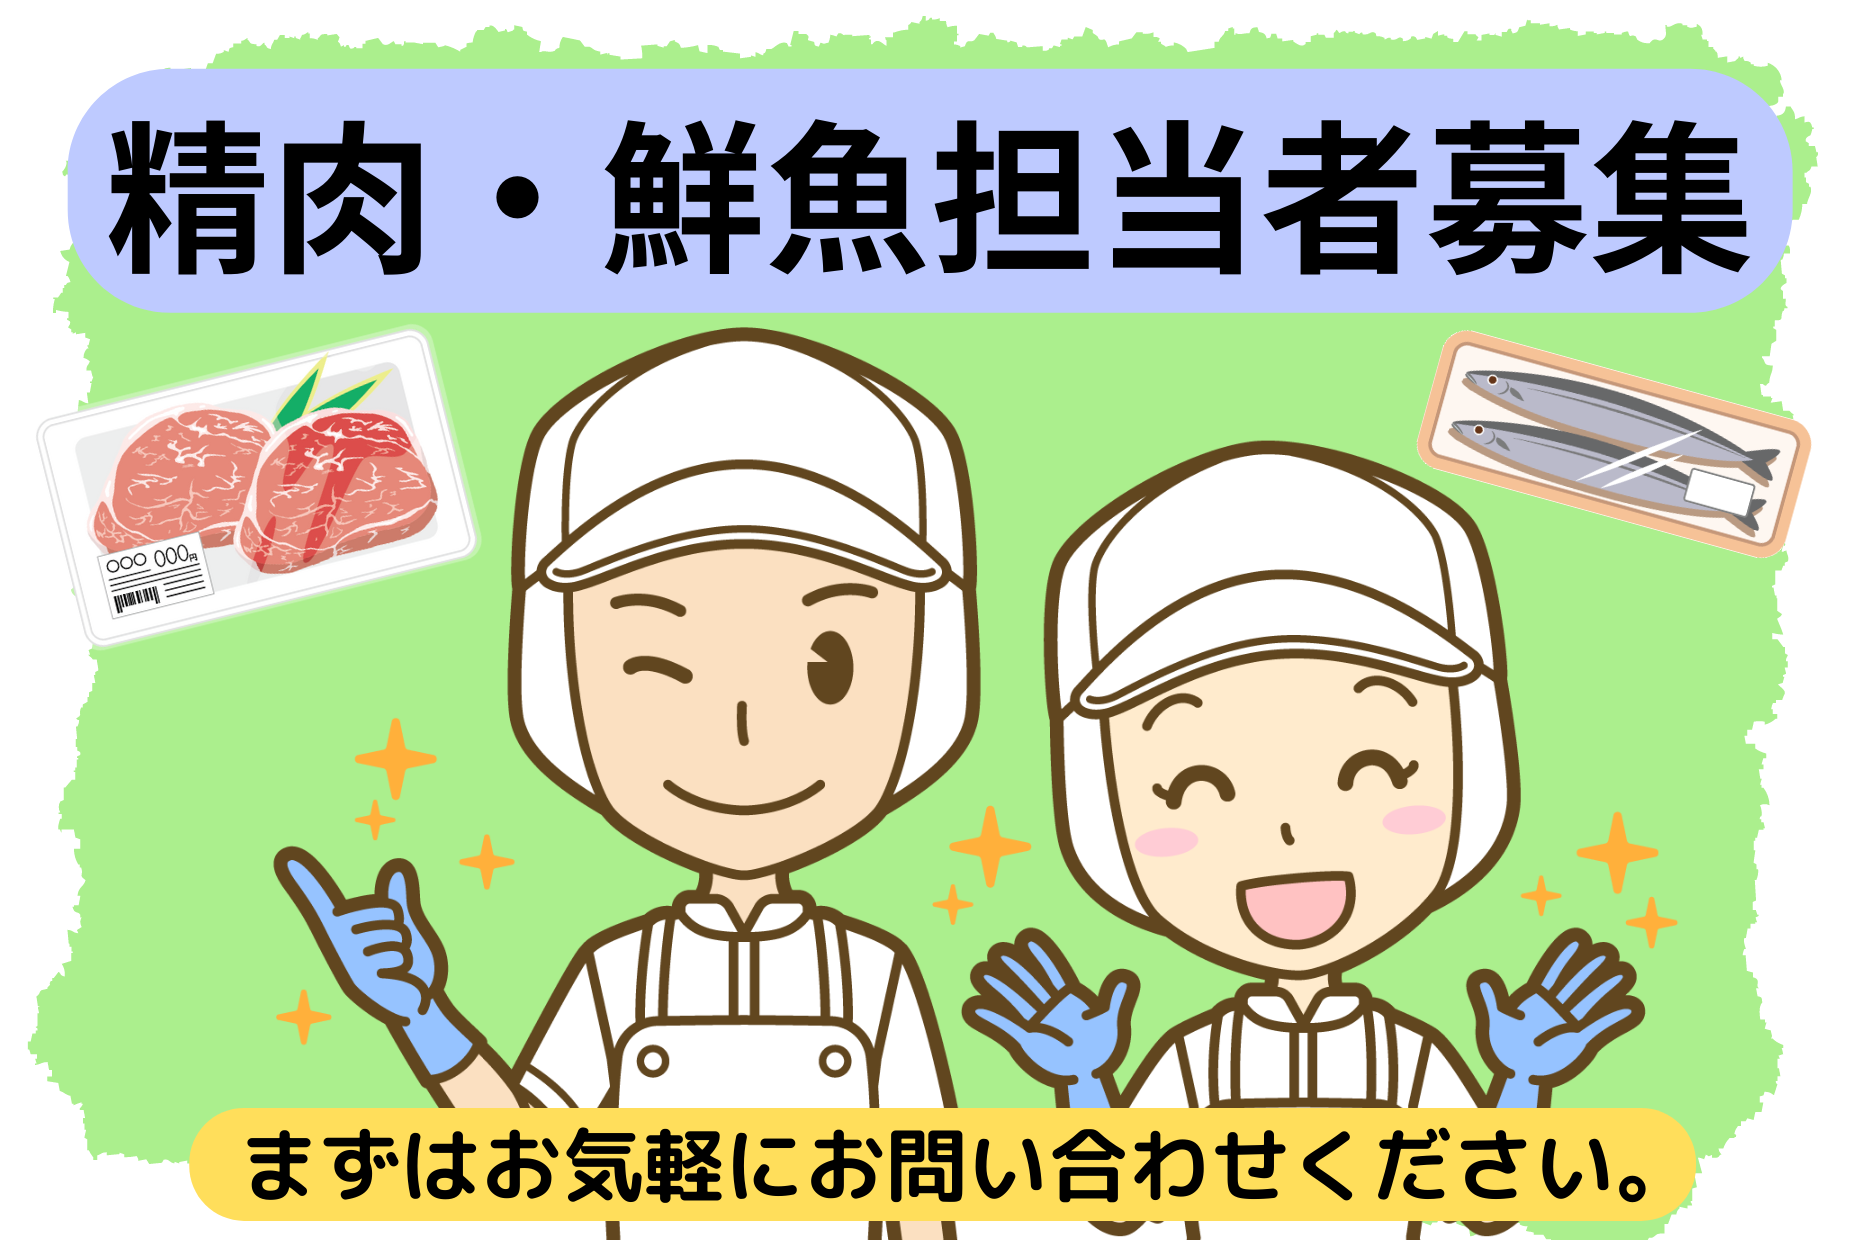 【マミーマート】 鮮魚/精肉部門担当募集・正社員 イメージ